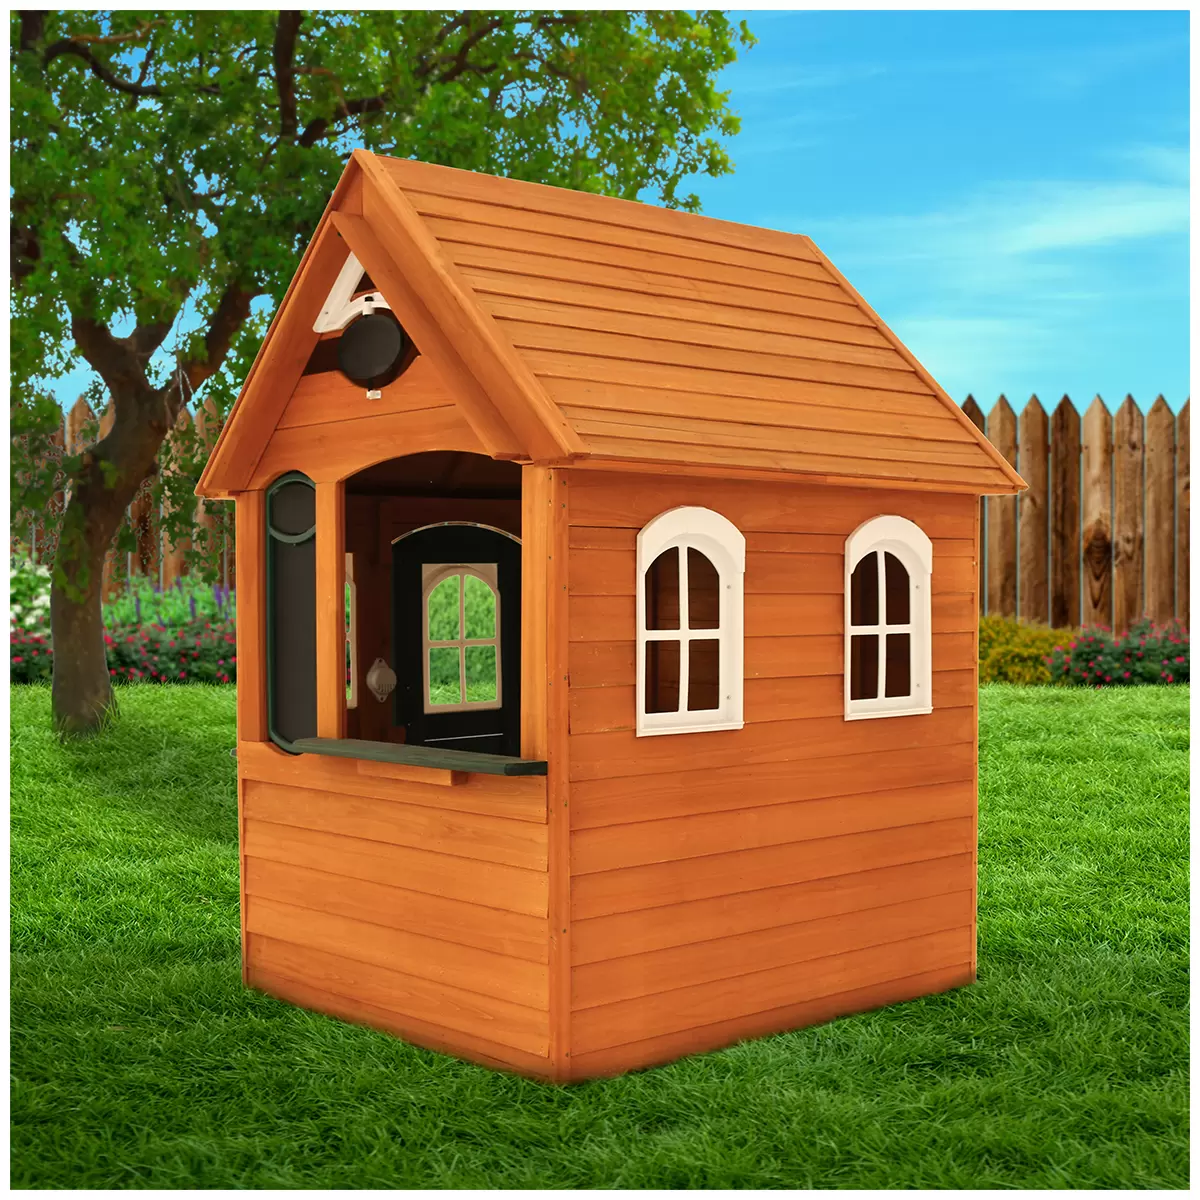 KidKraftBancroft Wooden Play House